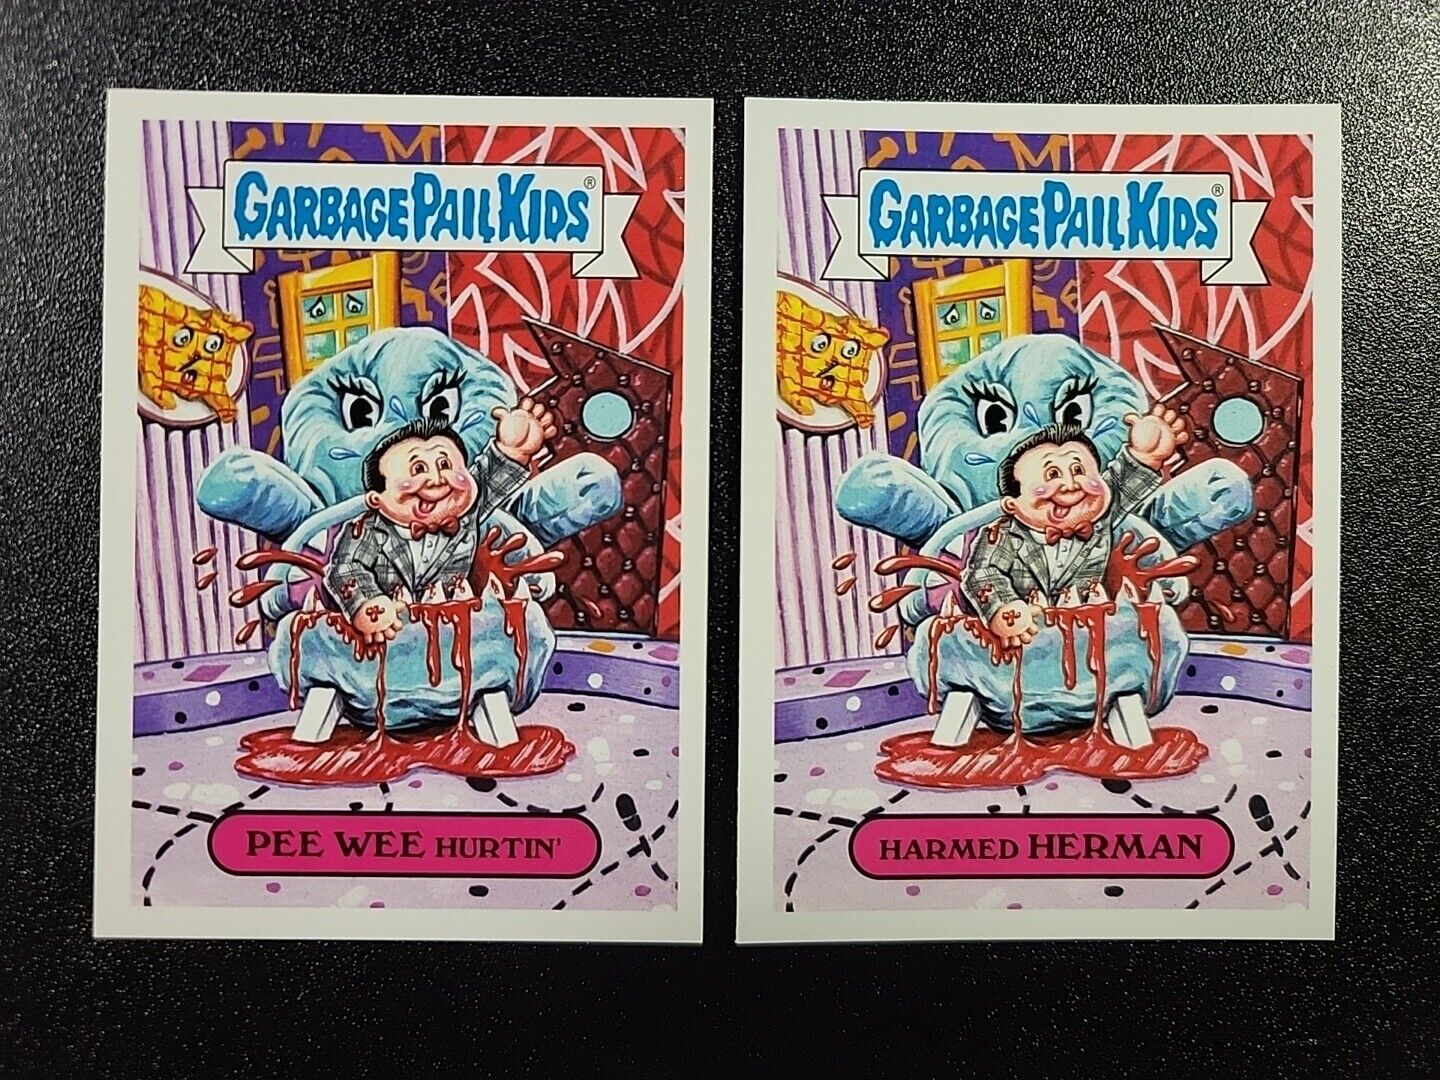 Paul Reubens Pee-Wee Herman Pee-Wee's Playhouse Spoof Garbage Pail Kids Card Set